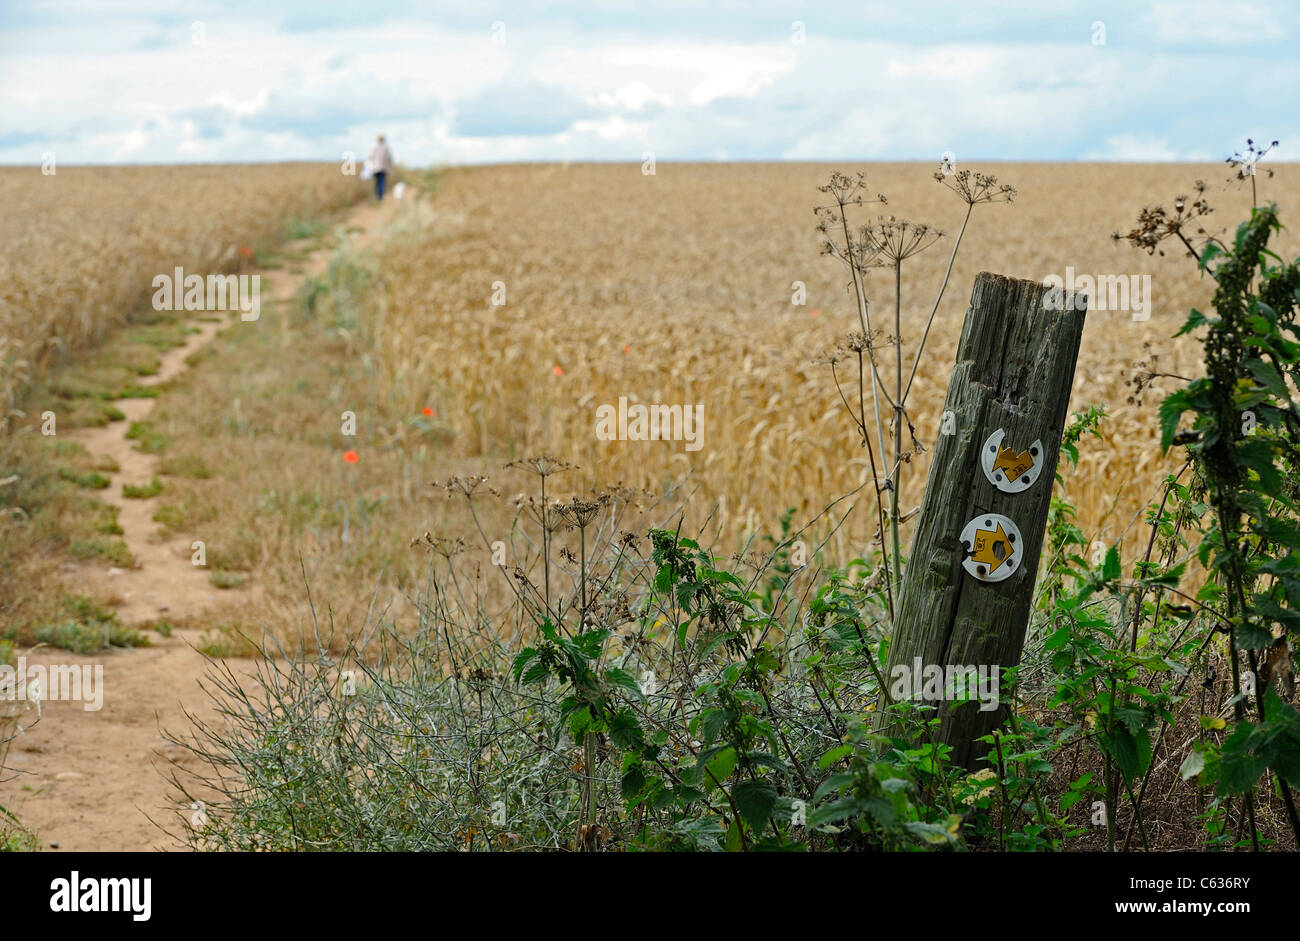 Puesto flechas que muestran la dirección de paseos públicos a través de un campo de maíz y una mujer paseando a sus perros. Foto de stock